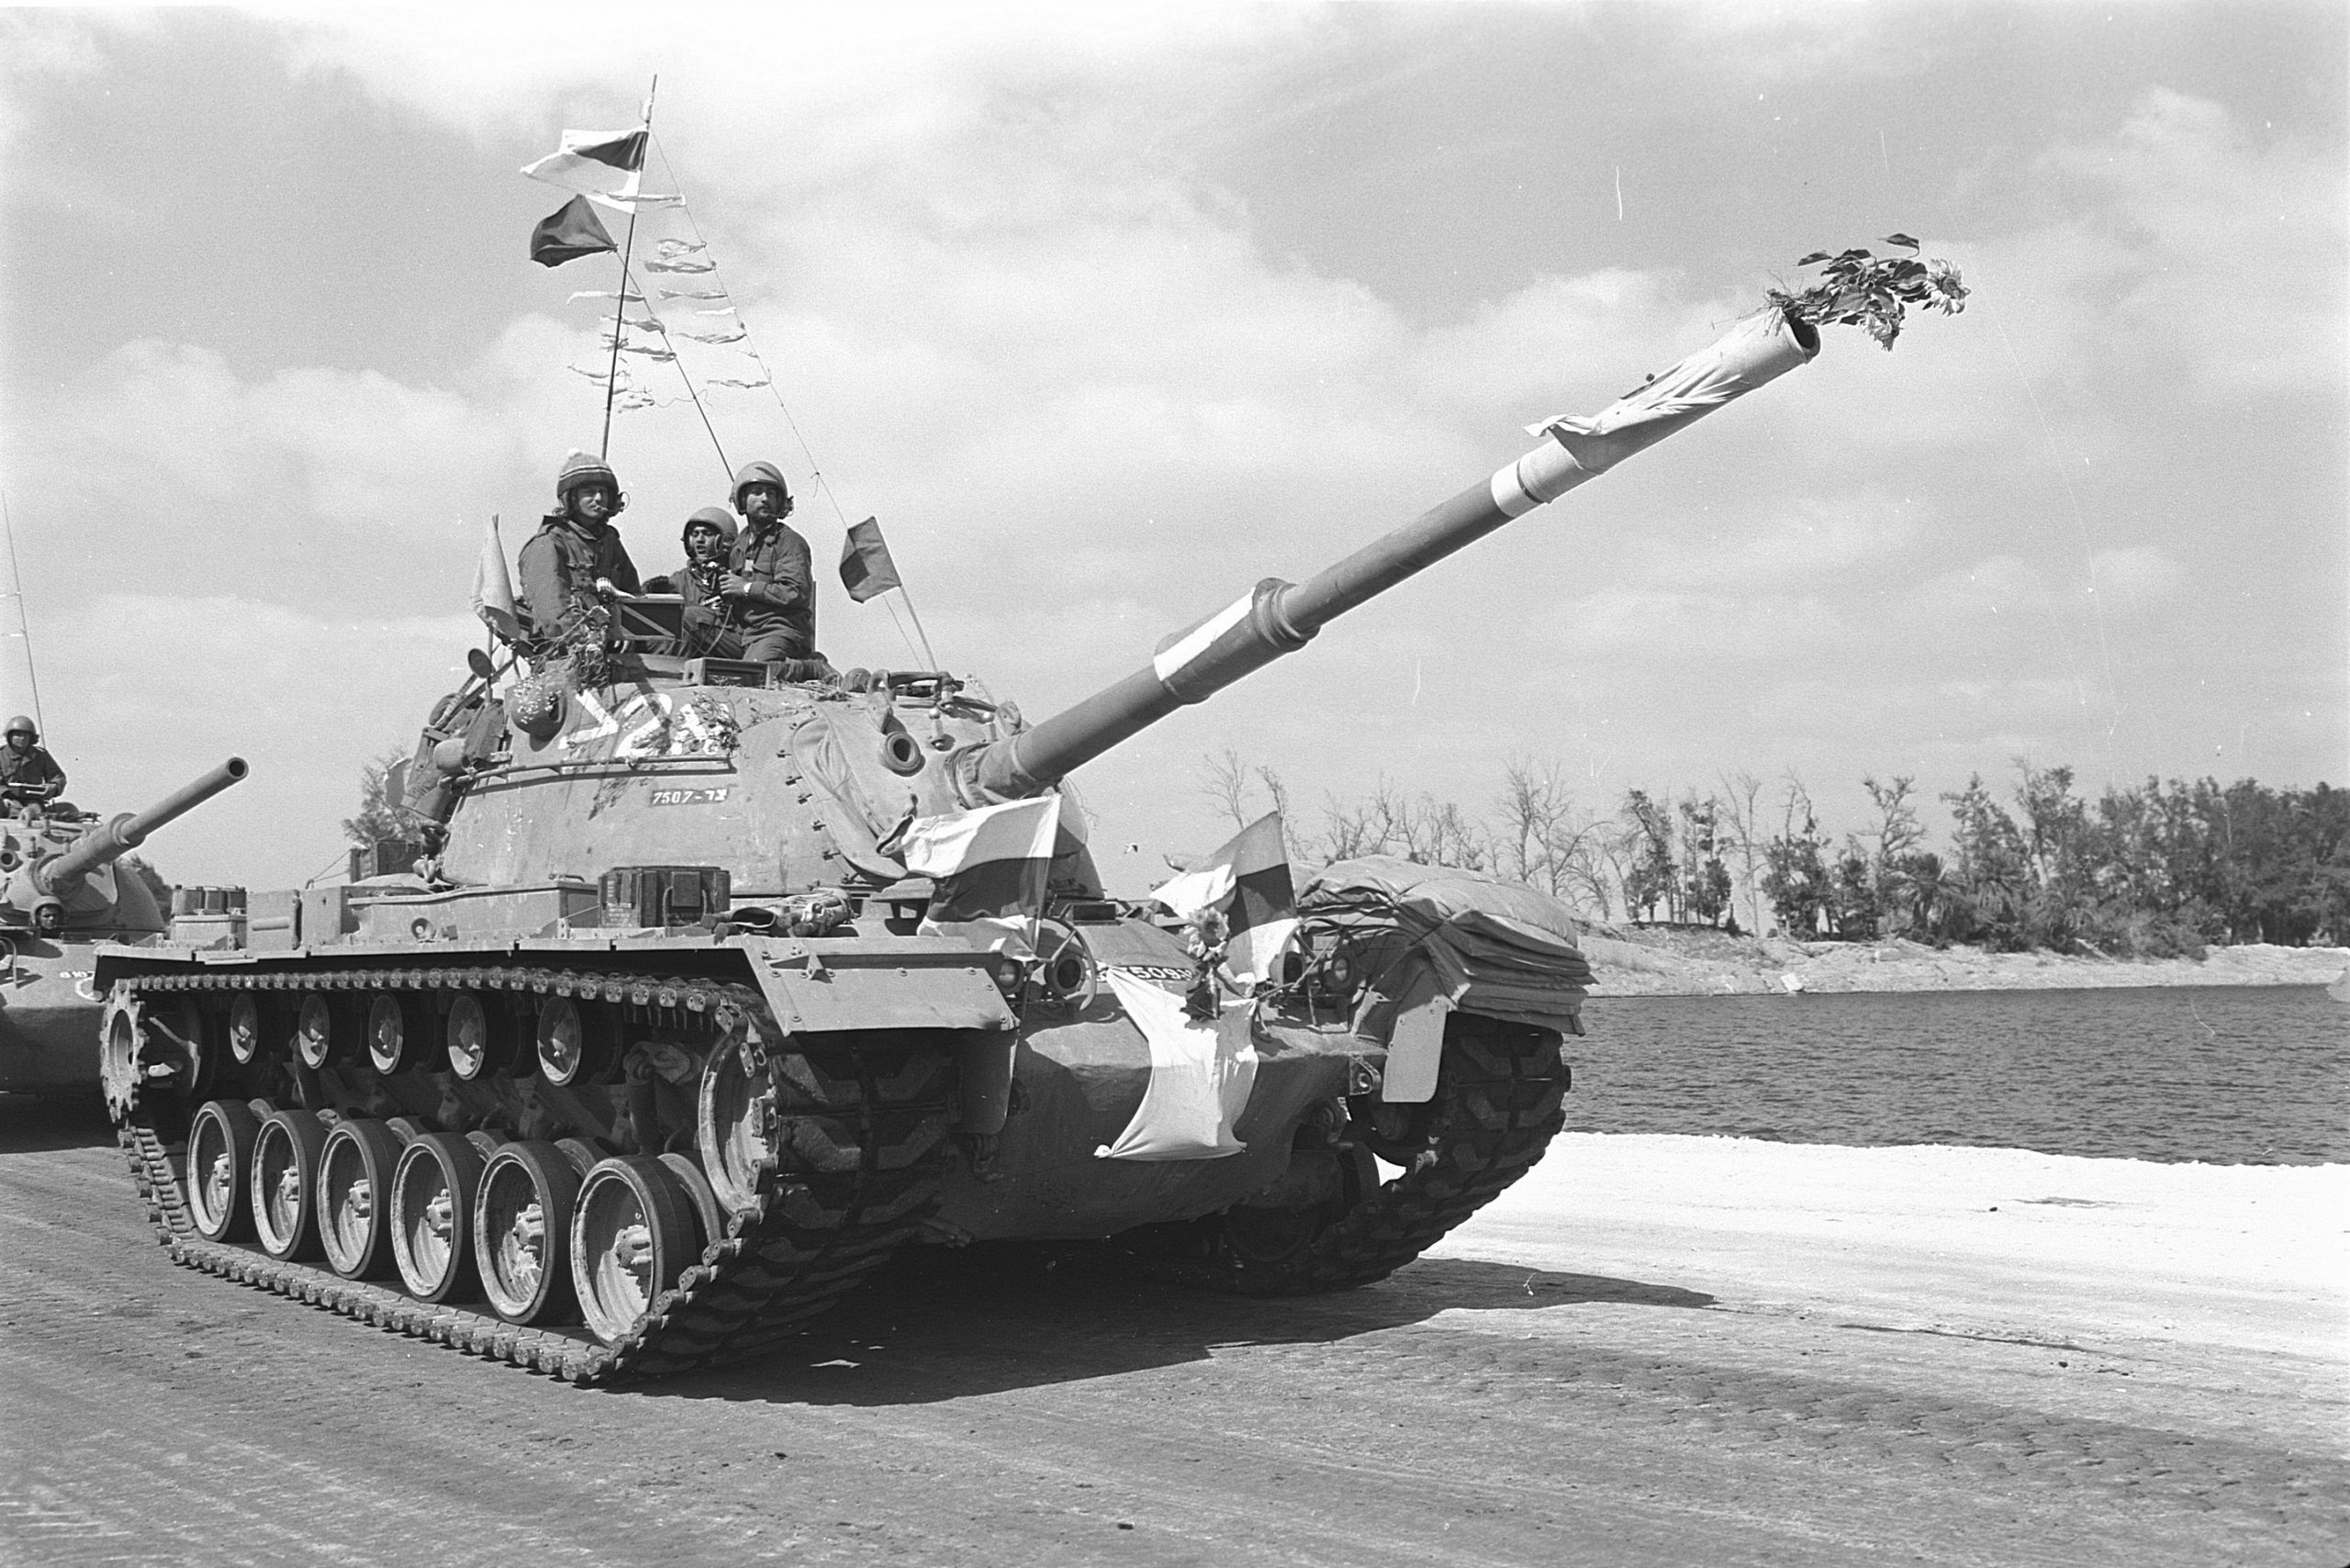 טנק מגח 3 של חטיבה 421 (חטיבת הצליחה – מילואים) מקושט בדגלים ופרחים במהלך חציית התעלה מזרחה. (יד לשריון ע"י בתמונה)